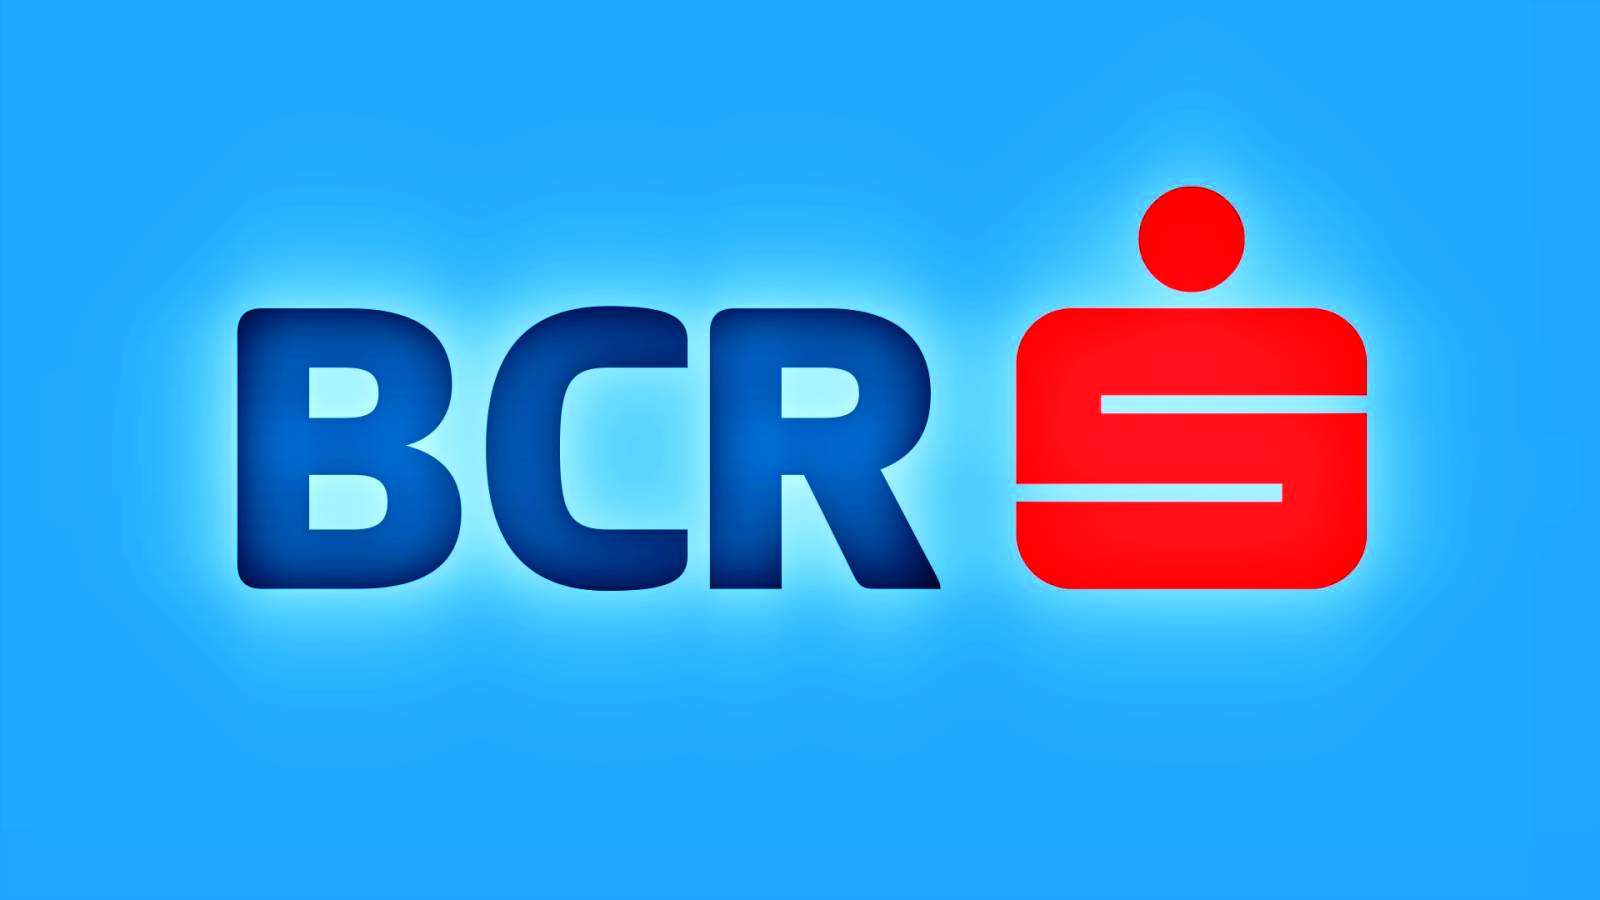 BCR Rumänien semester